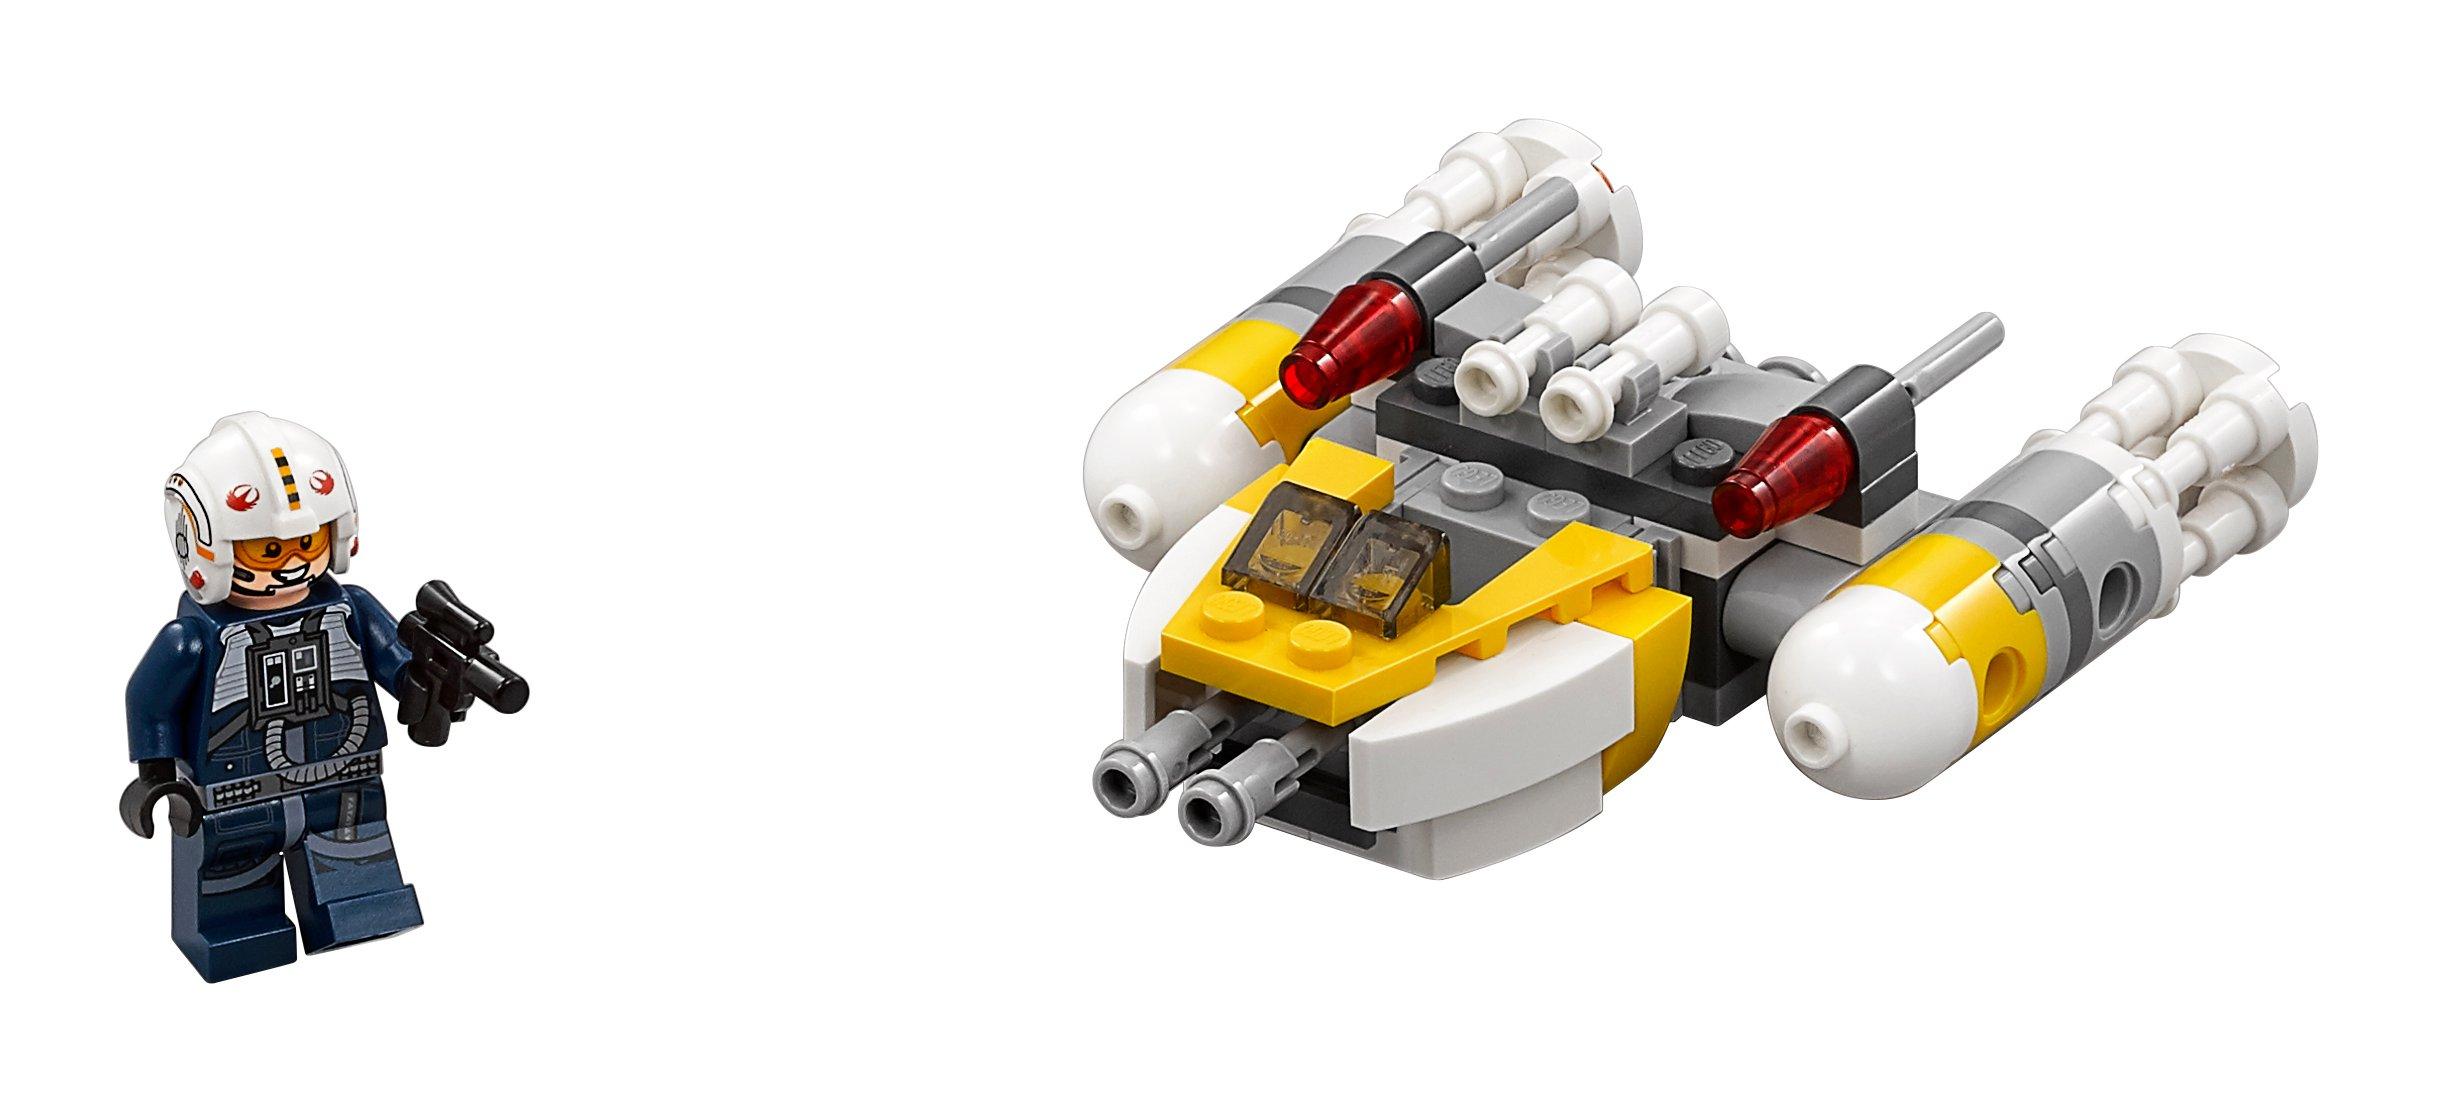 LEGO®  75162 Y-Wing™ Microfighter 